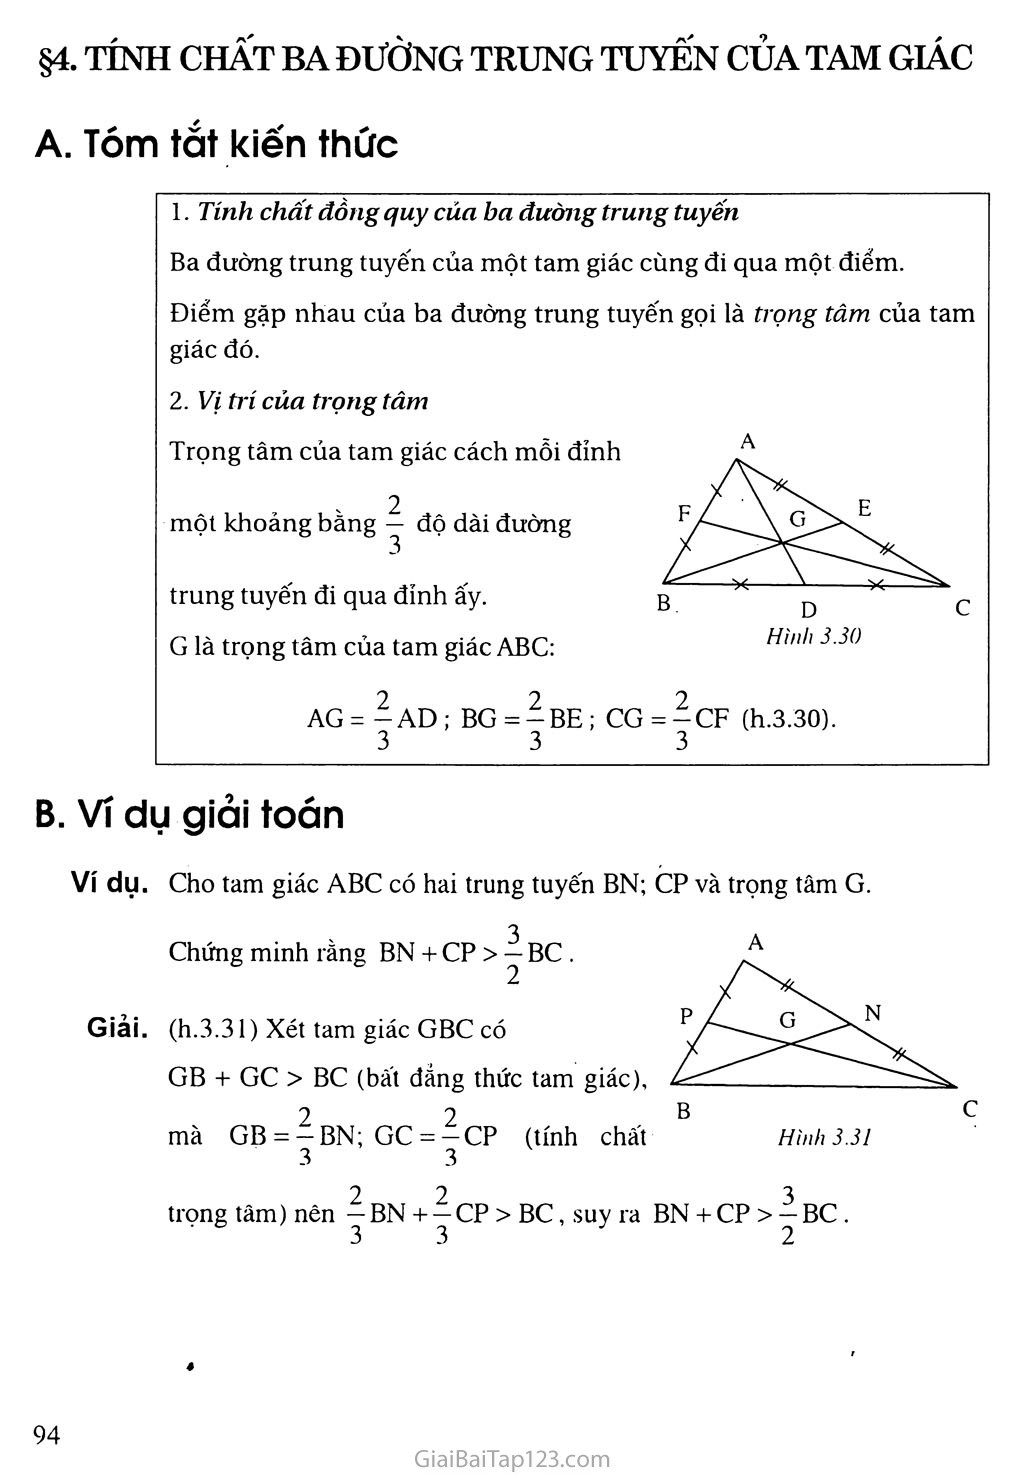 Giải toán 7 Bài 4. Tình chất ba đường trung tuyến của tam giác